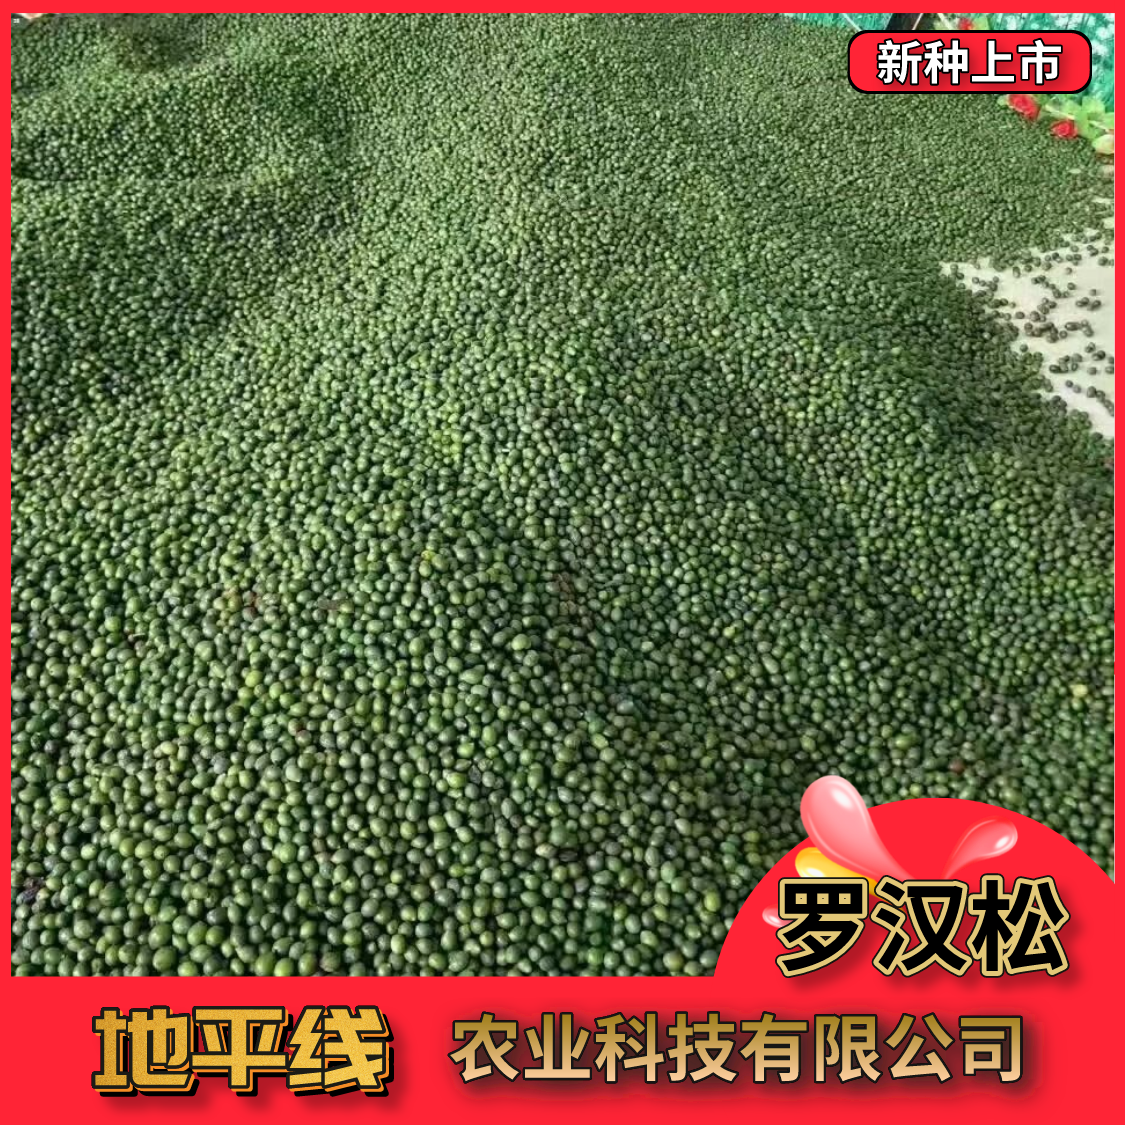 沭阳县新采罗汉松种子小叶罗汉松种子珍珠罗汉松印度雪松种子包邮